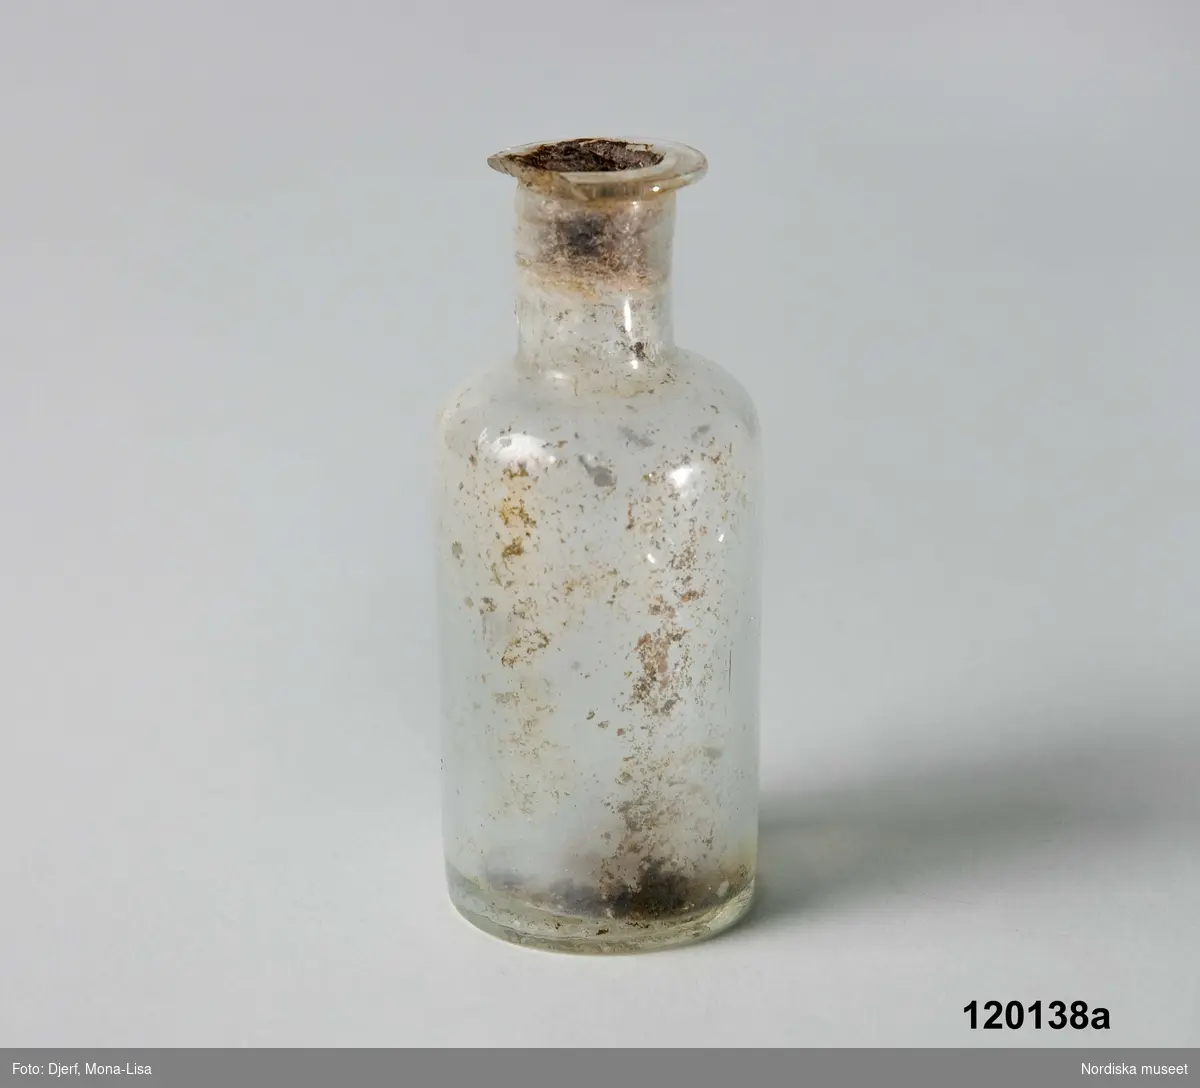 Huvudliggare:
"Brännvin i två, små flaskor (gravfynd). Funna vid gravgrävning 1913. Graven anses vara från omkring 1860-talet. Från S. Unnaryds kyrkogård."